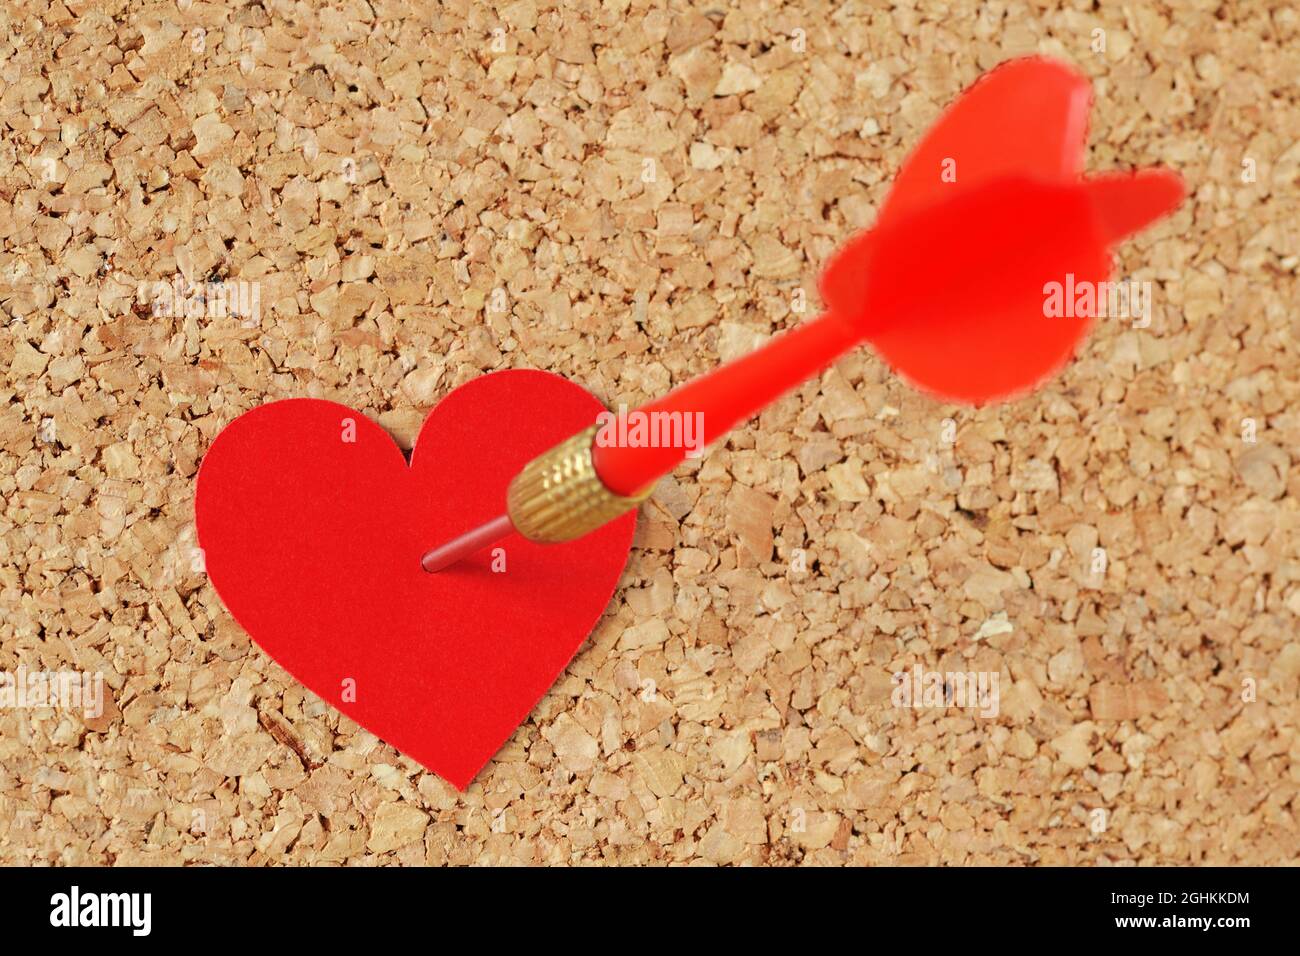 Pfeil in einem roten Herzen auf Pinnwand schlagen - Konzept der Liebe Stockfoto